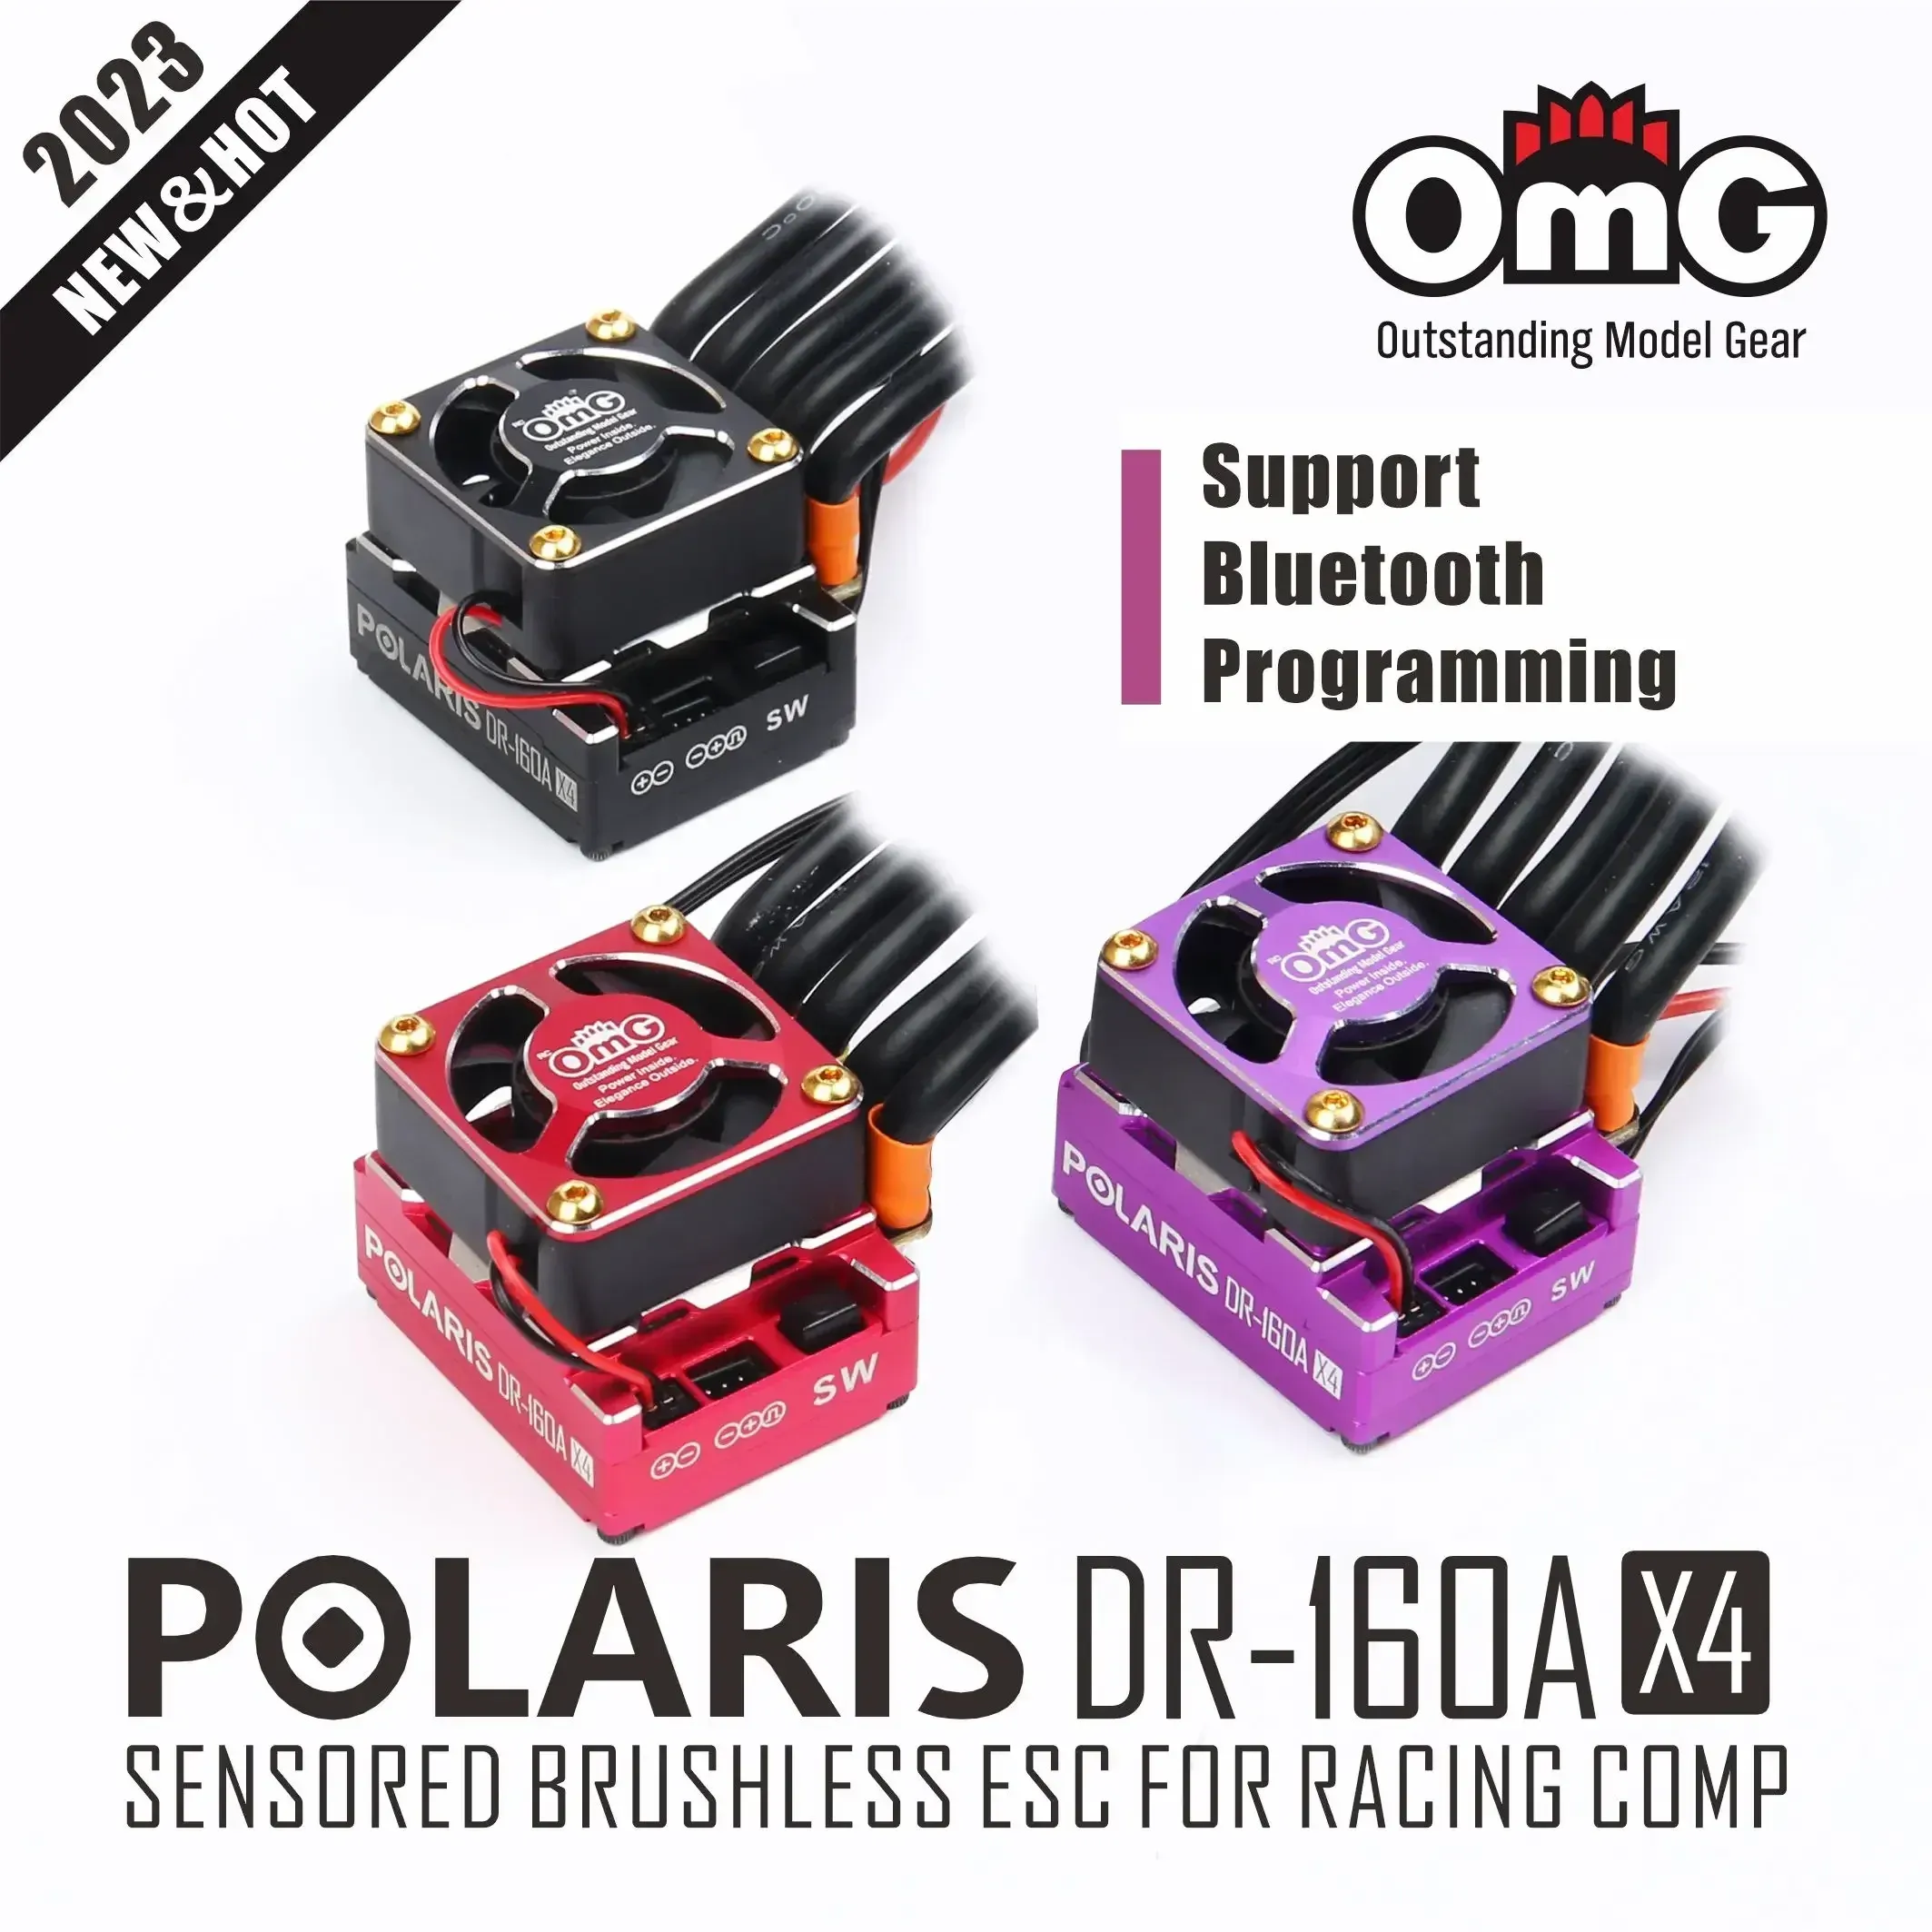 OmG POLARIS DR-160AX4 d-run sensoriel sans brosse 160A 101g ESC Support Bluetooth pour voiture RC plus haut niveau Spec 1:10 voiture de course